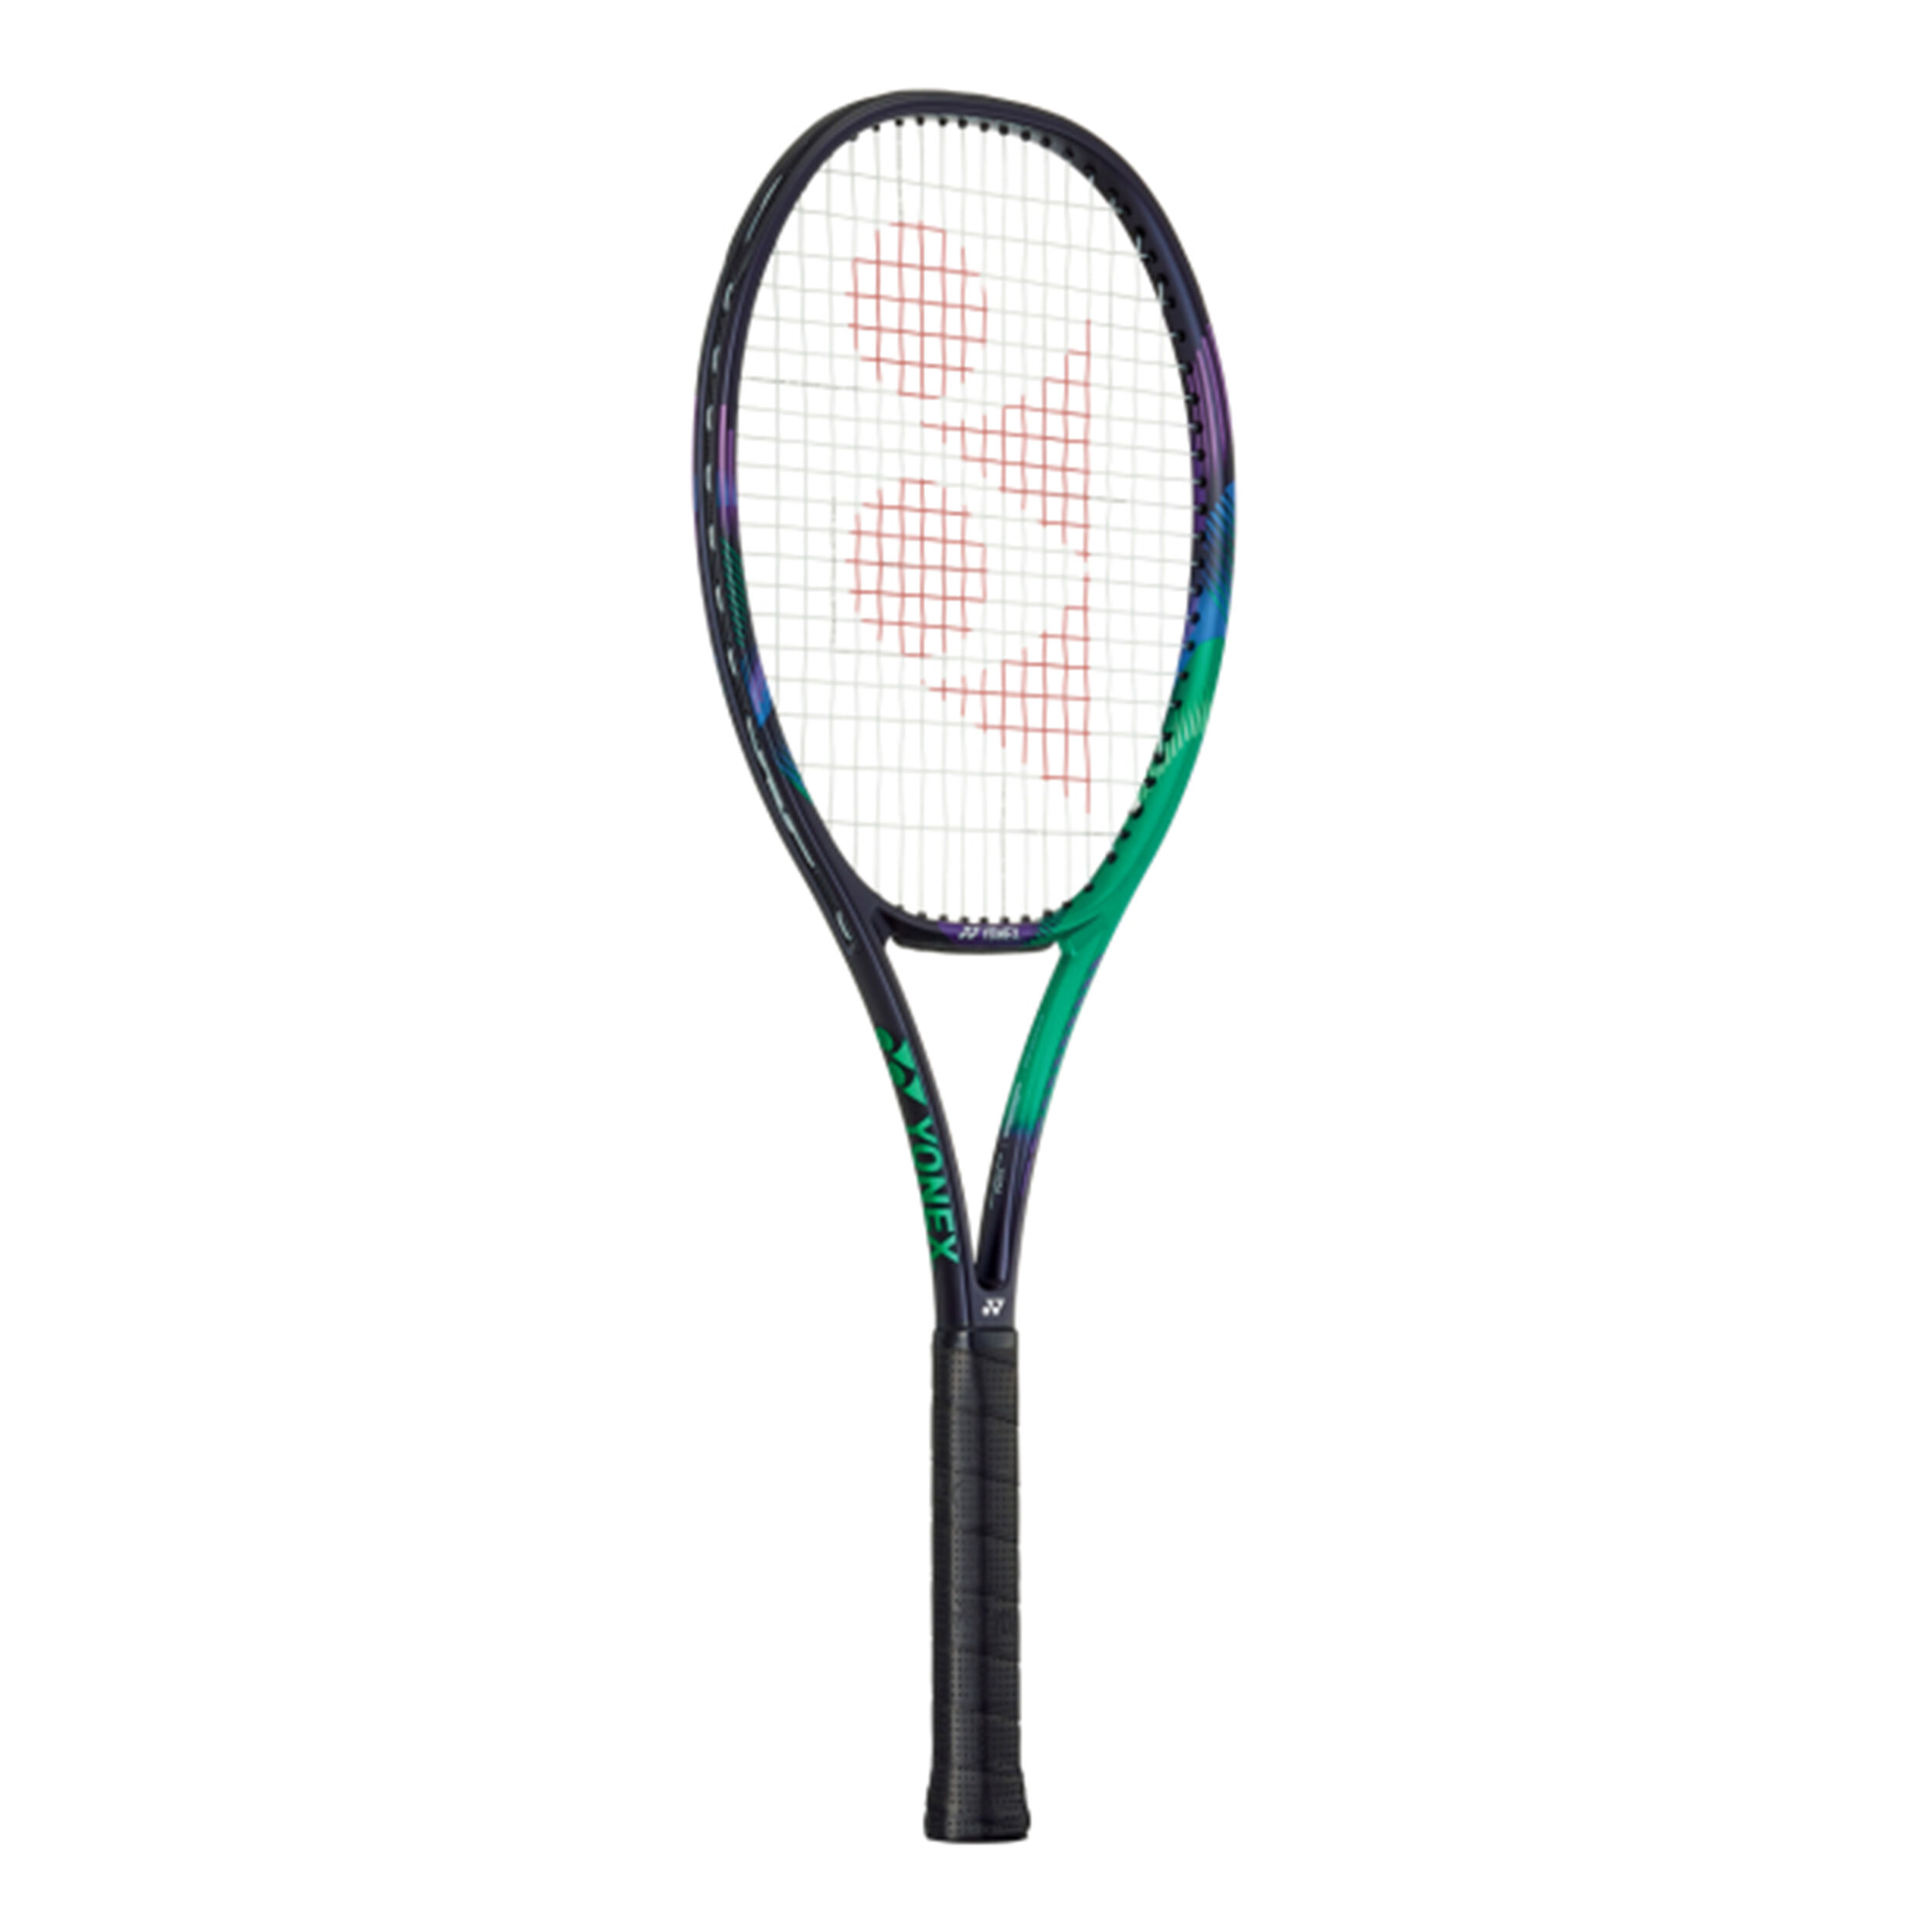 Buy Yonex VCORE Pro 97 (310g) online | Tennis Point COM